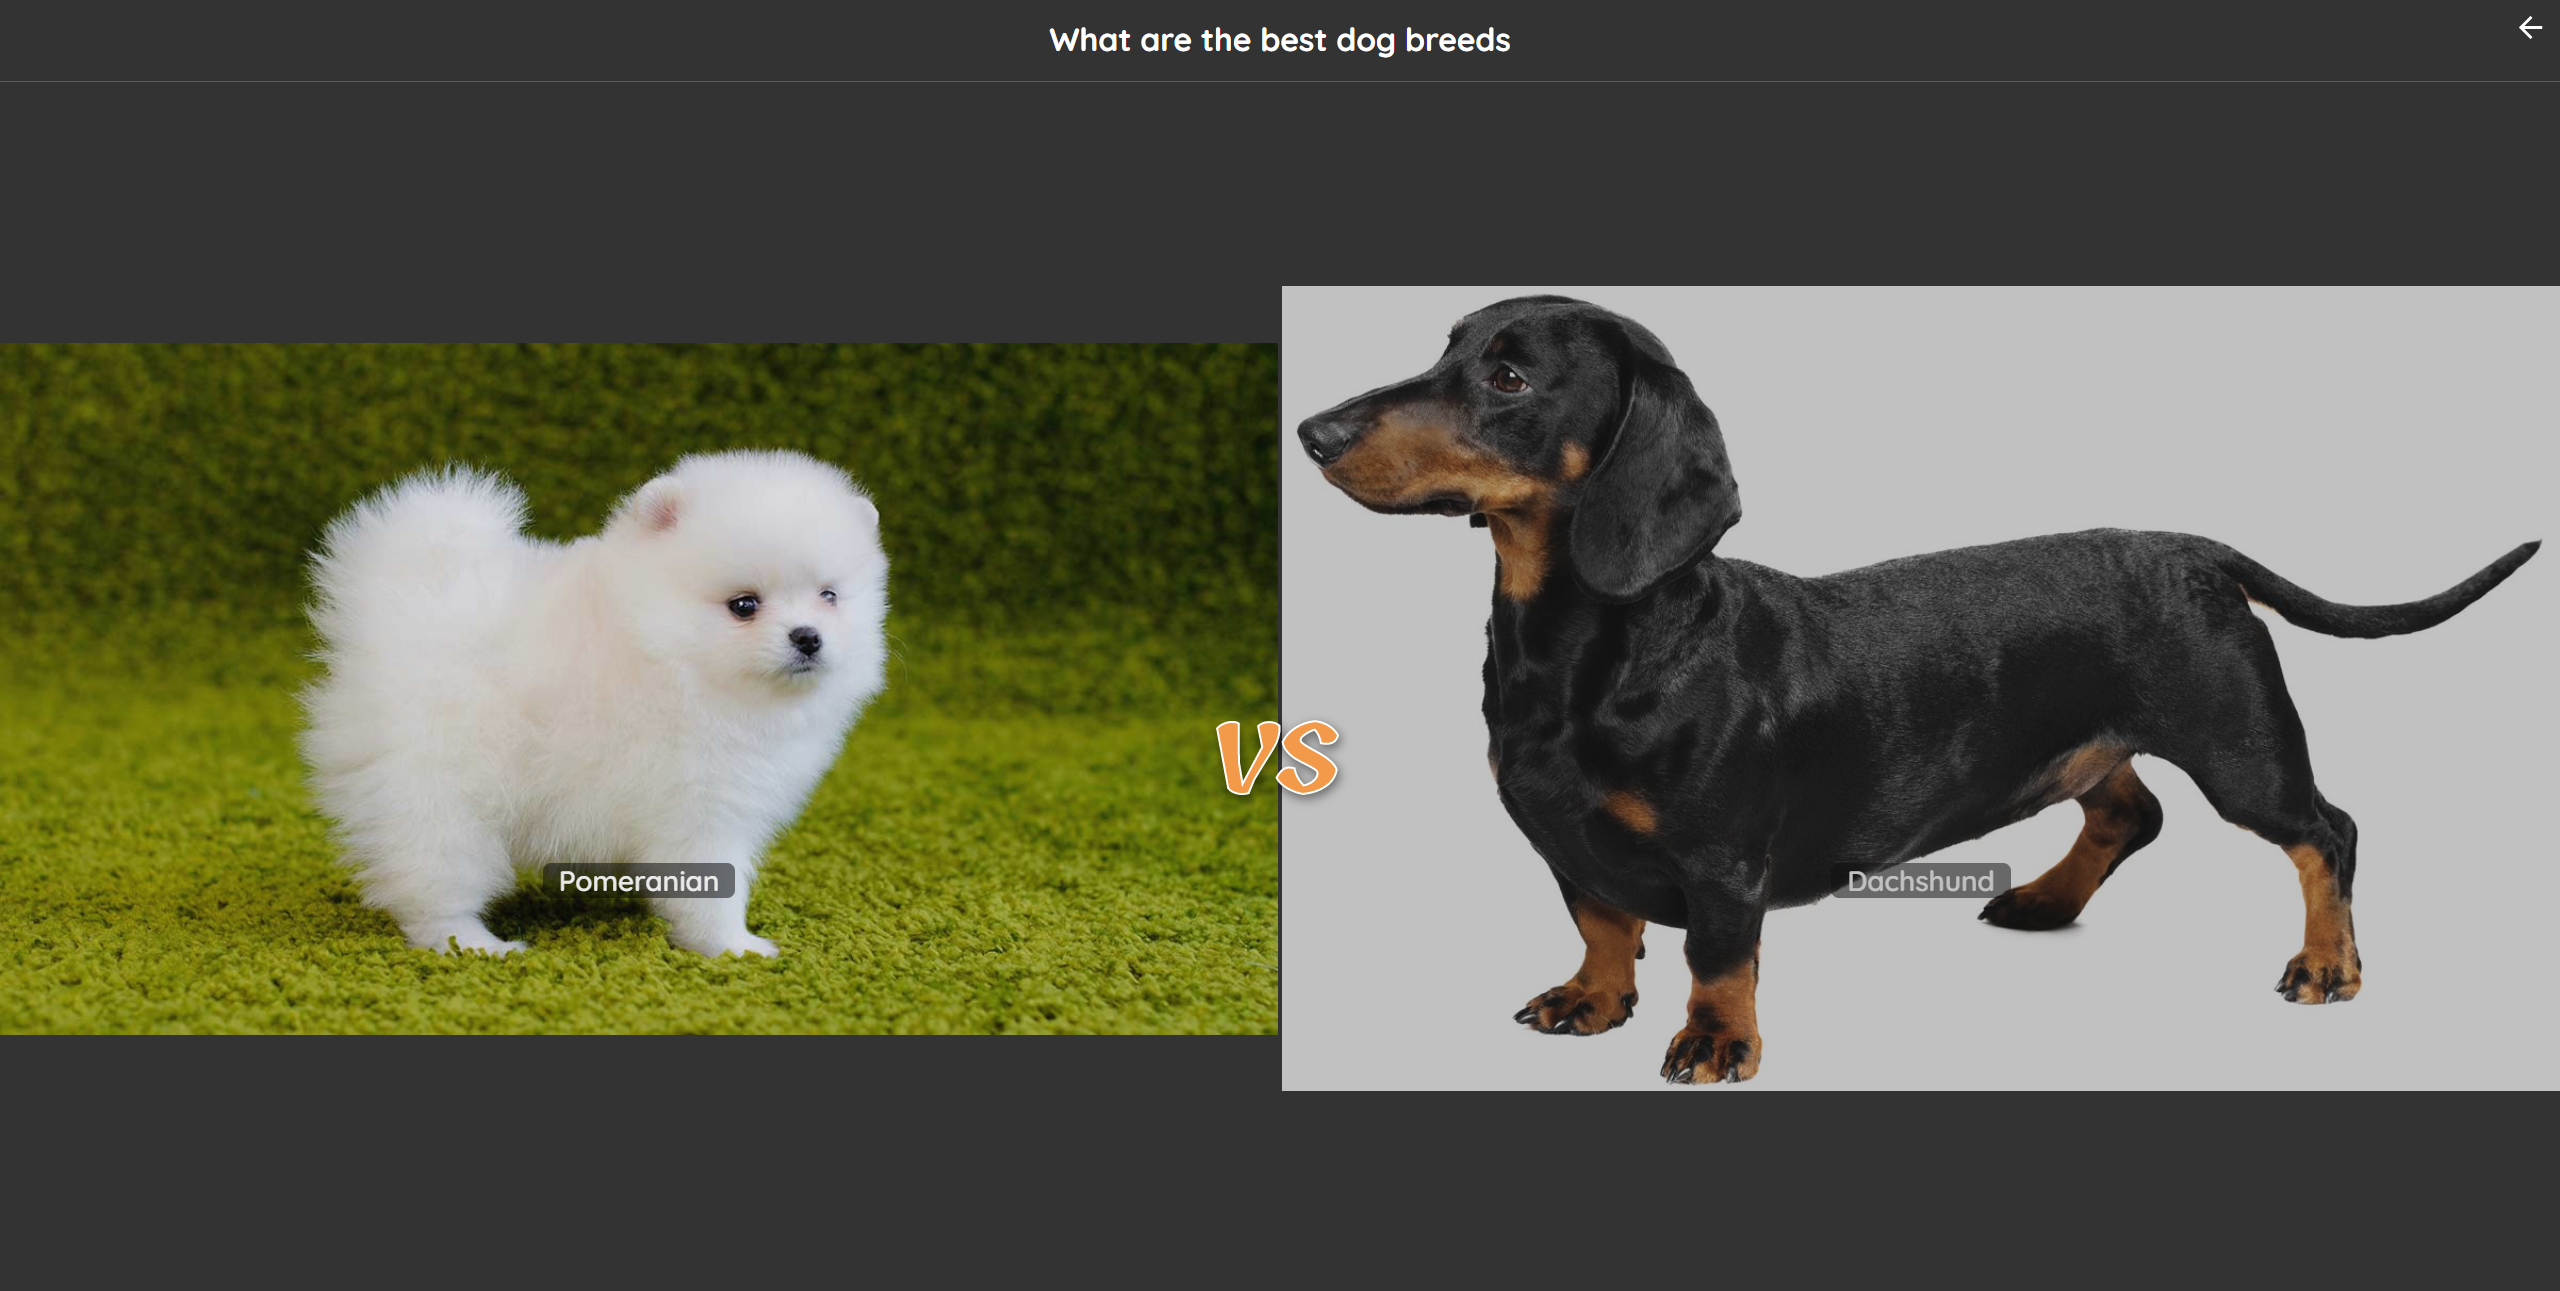 Pomeranian vs dachshund